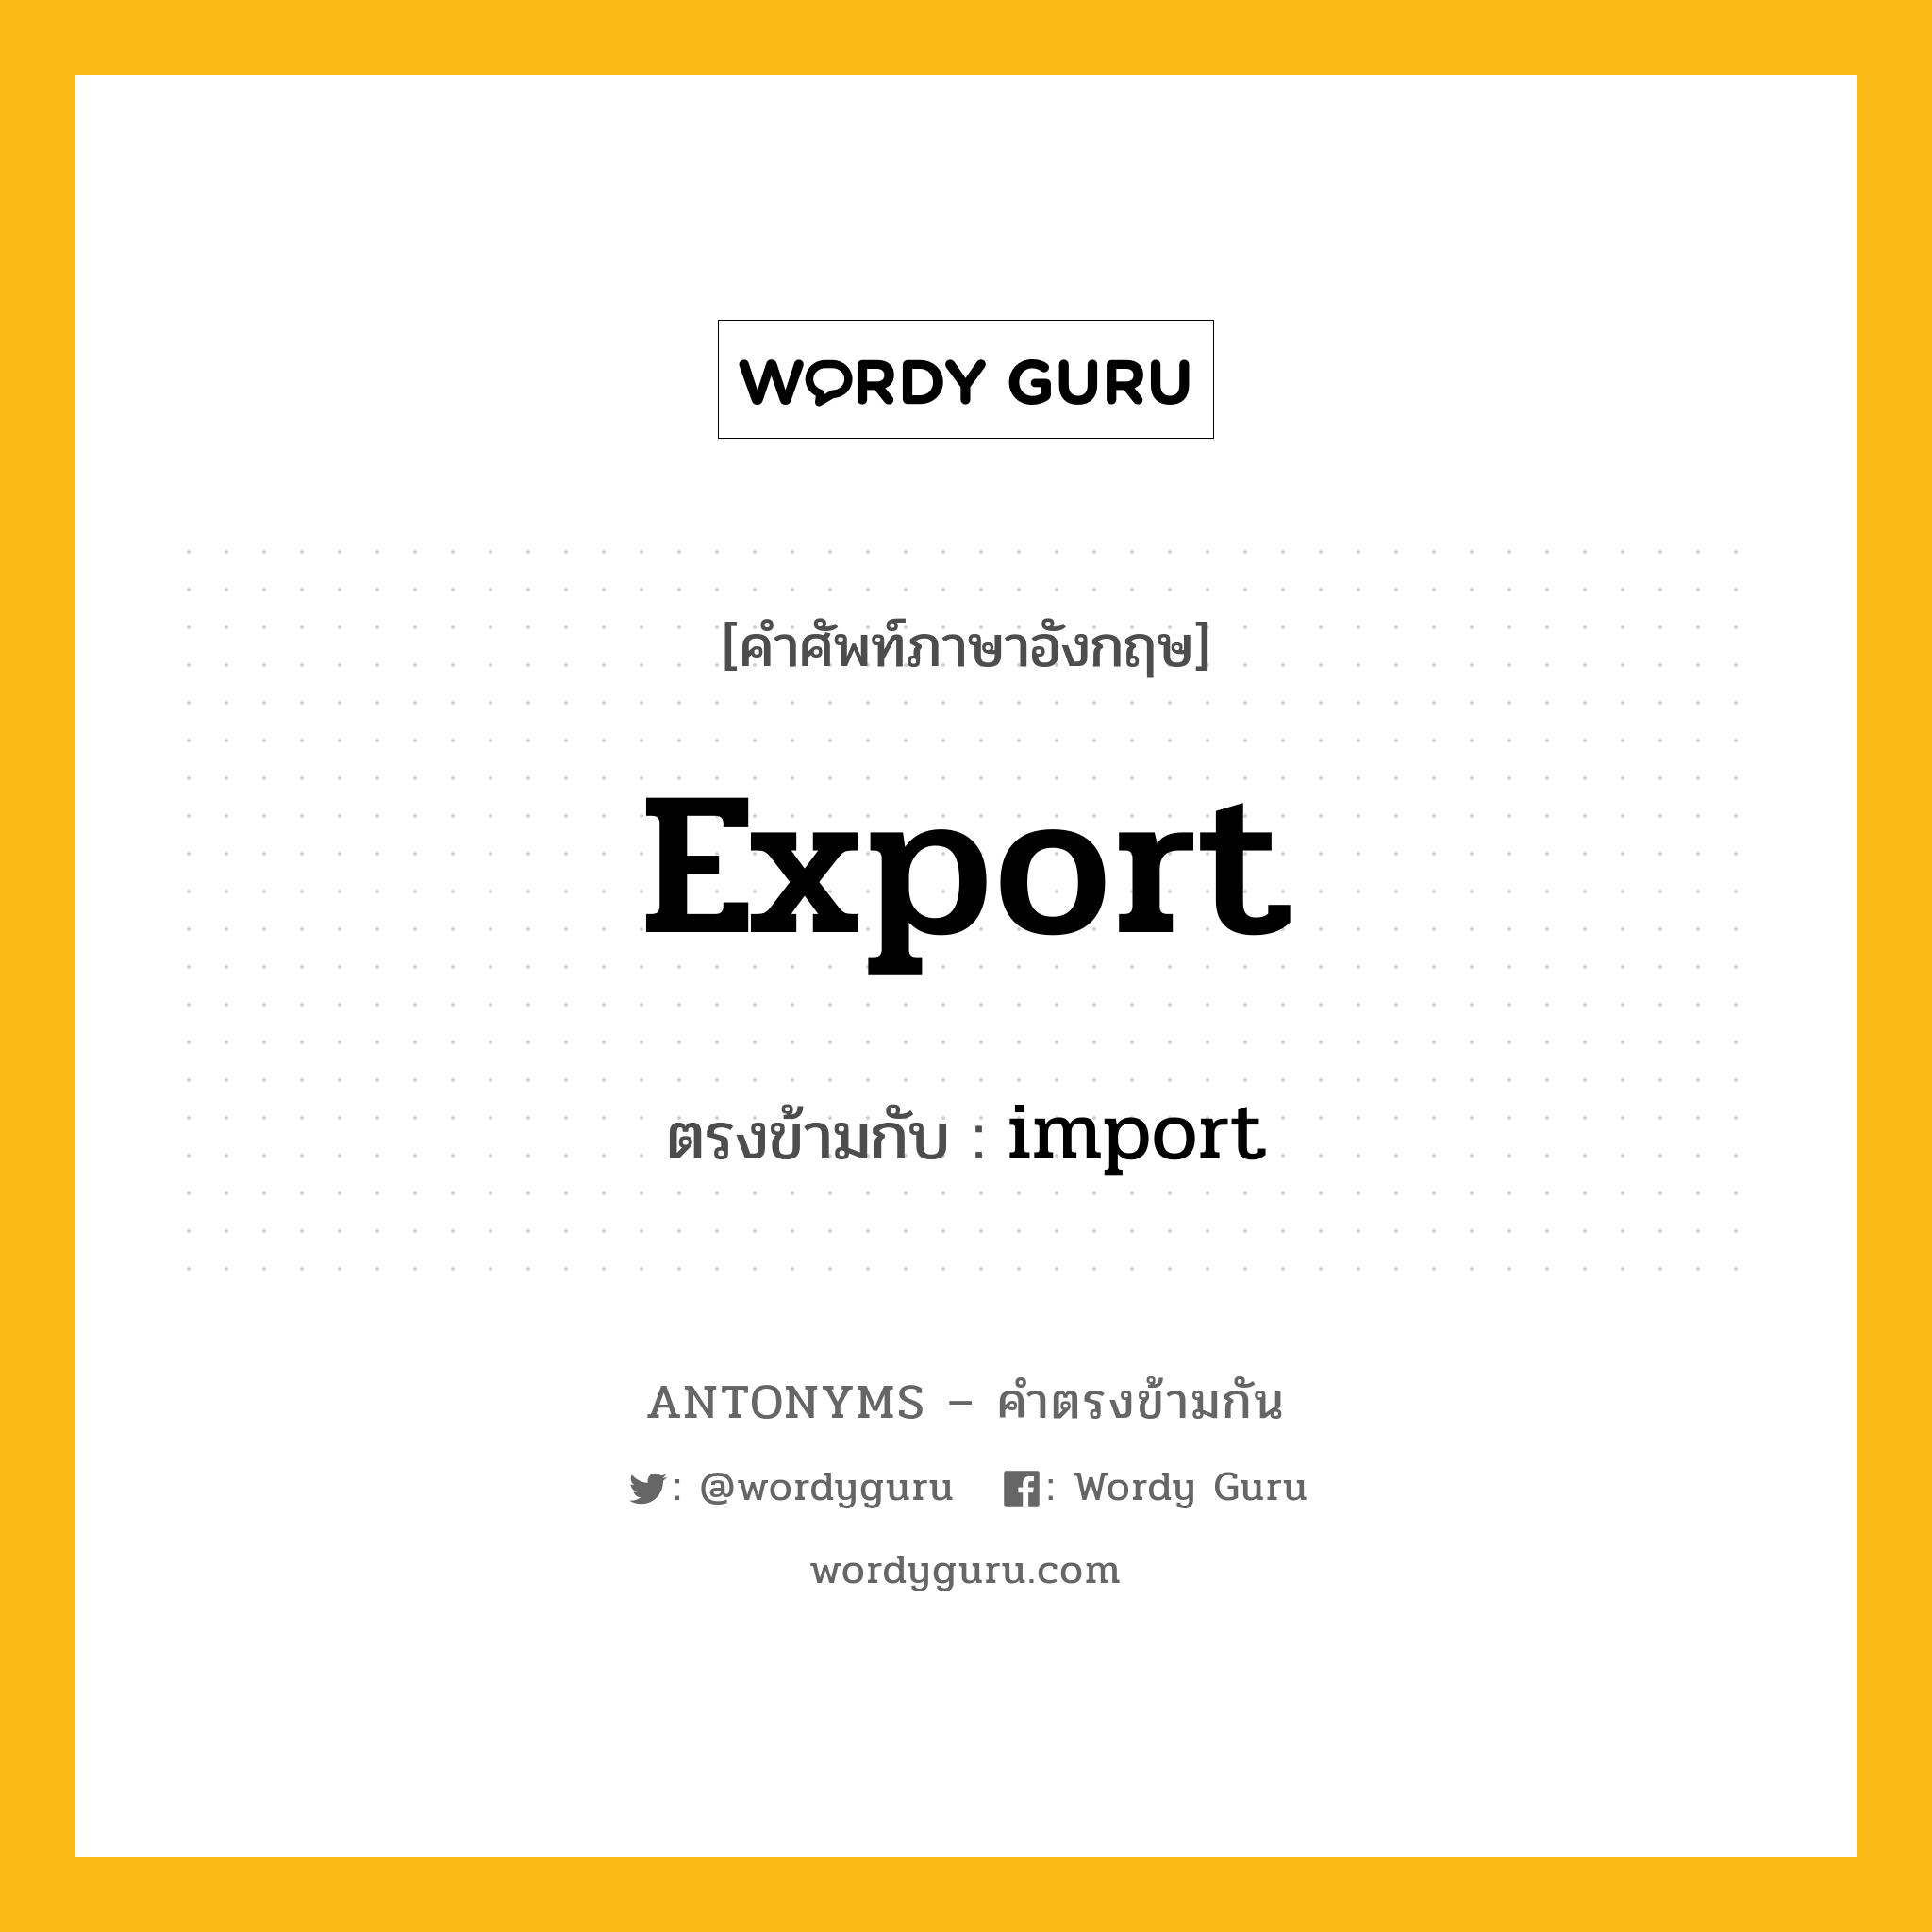 export เป็นคำตรงข้ามกับคำไหนบ้าง?, คำศัพท์ภาษาอังกฤษ export ตรงข้ามกับ import หมวด import